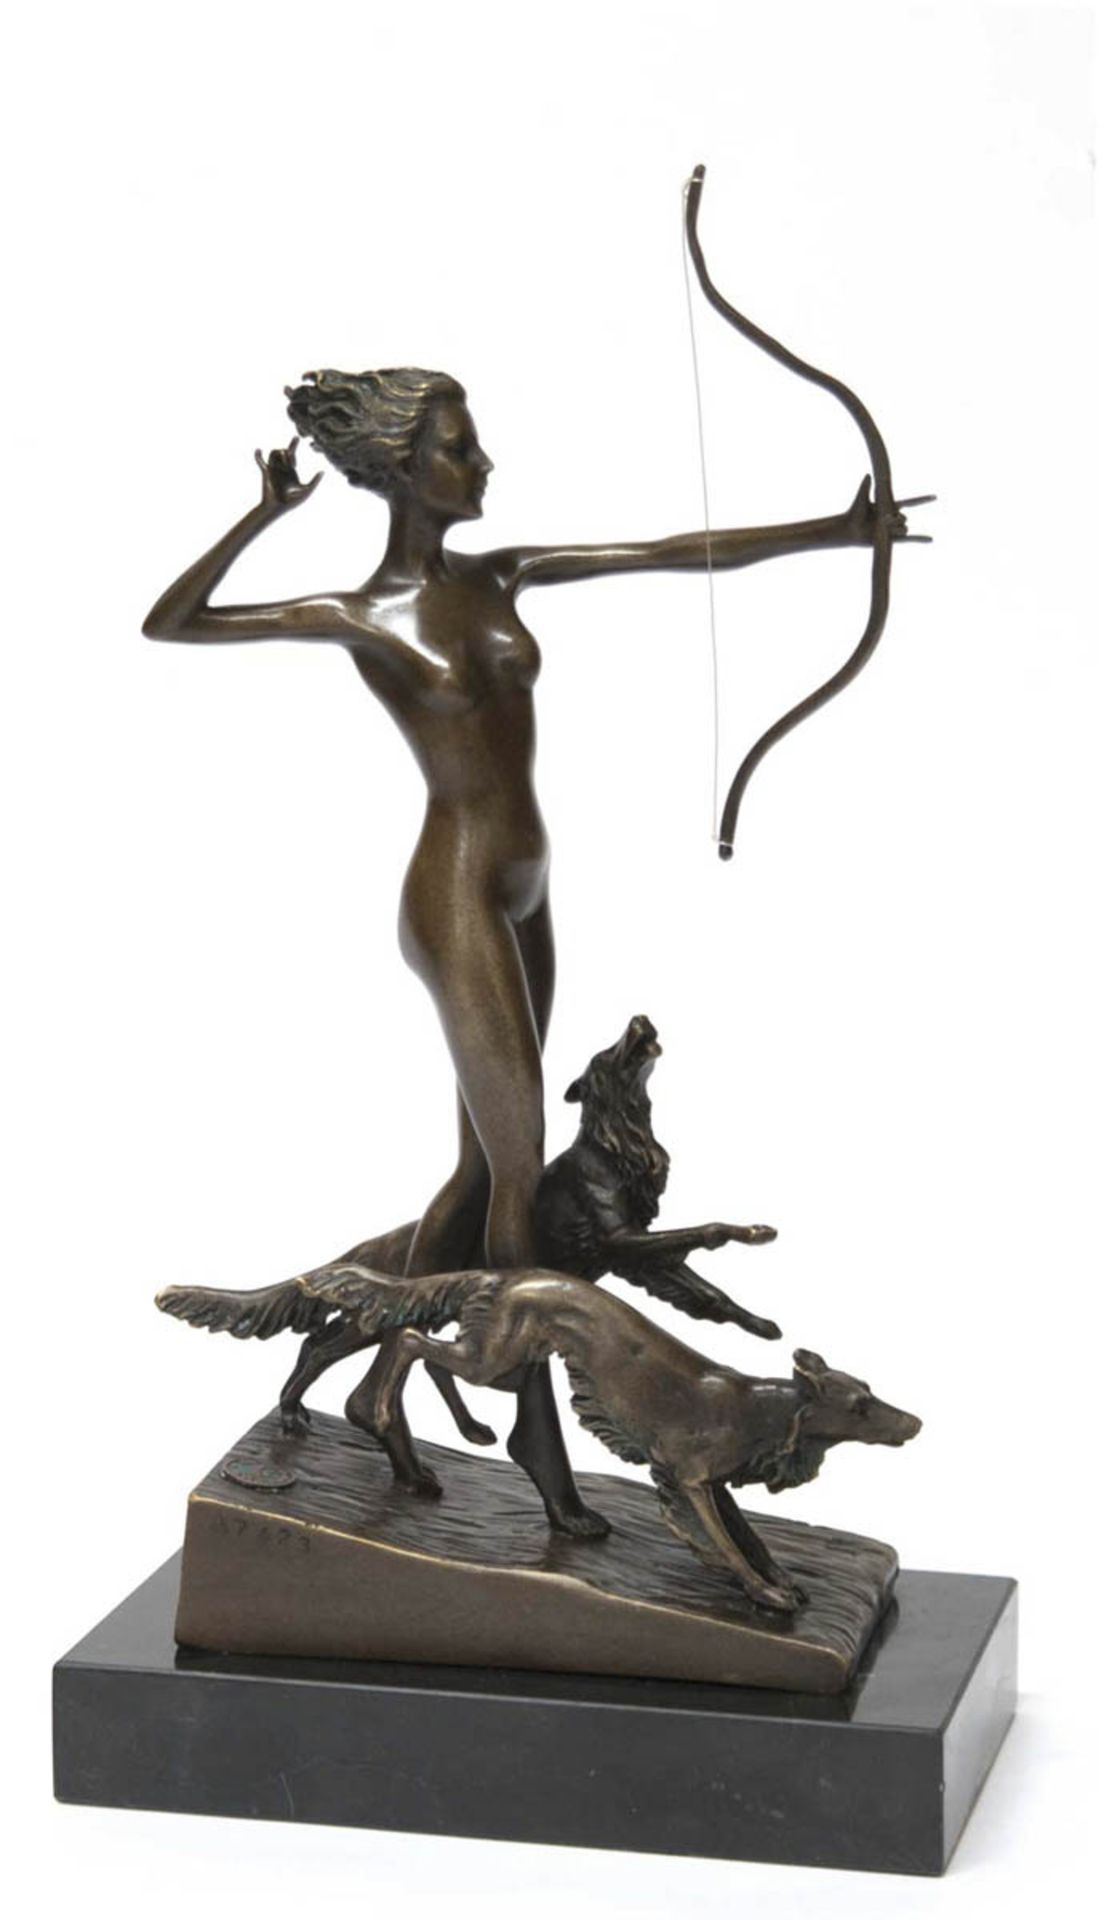 Bronze-Figurengruppe "Diana mit Bogen und zwei Hunden", Nachguß 20. Jh., signiert"Lorenzl", braun